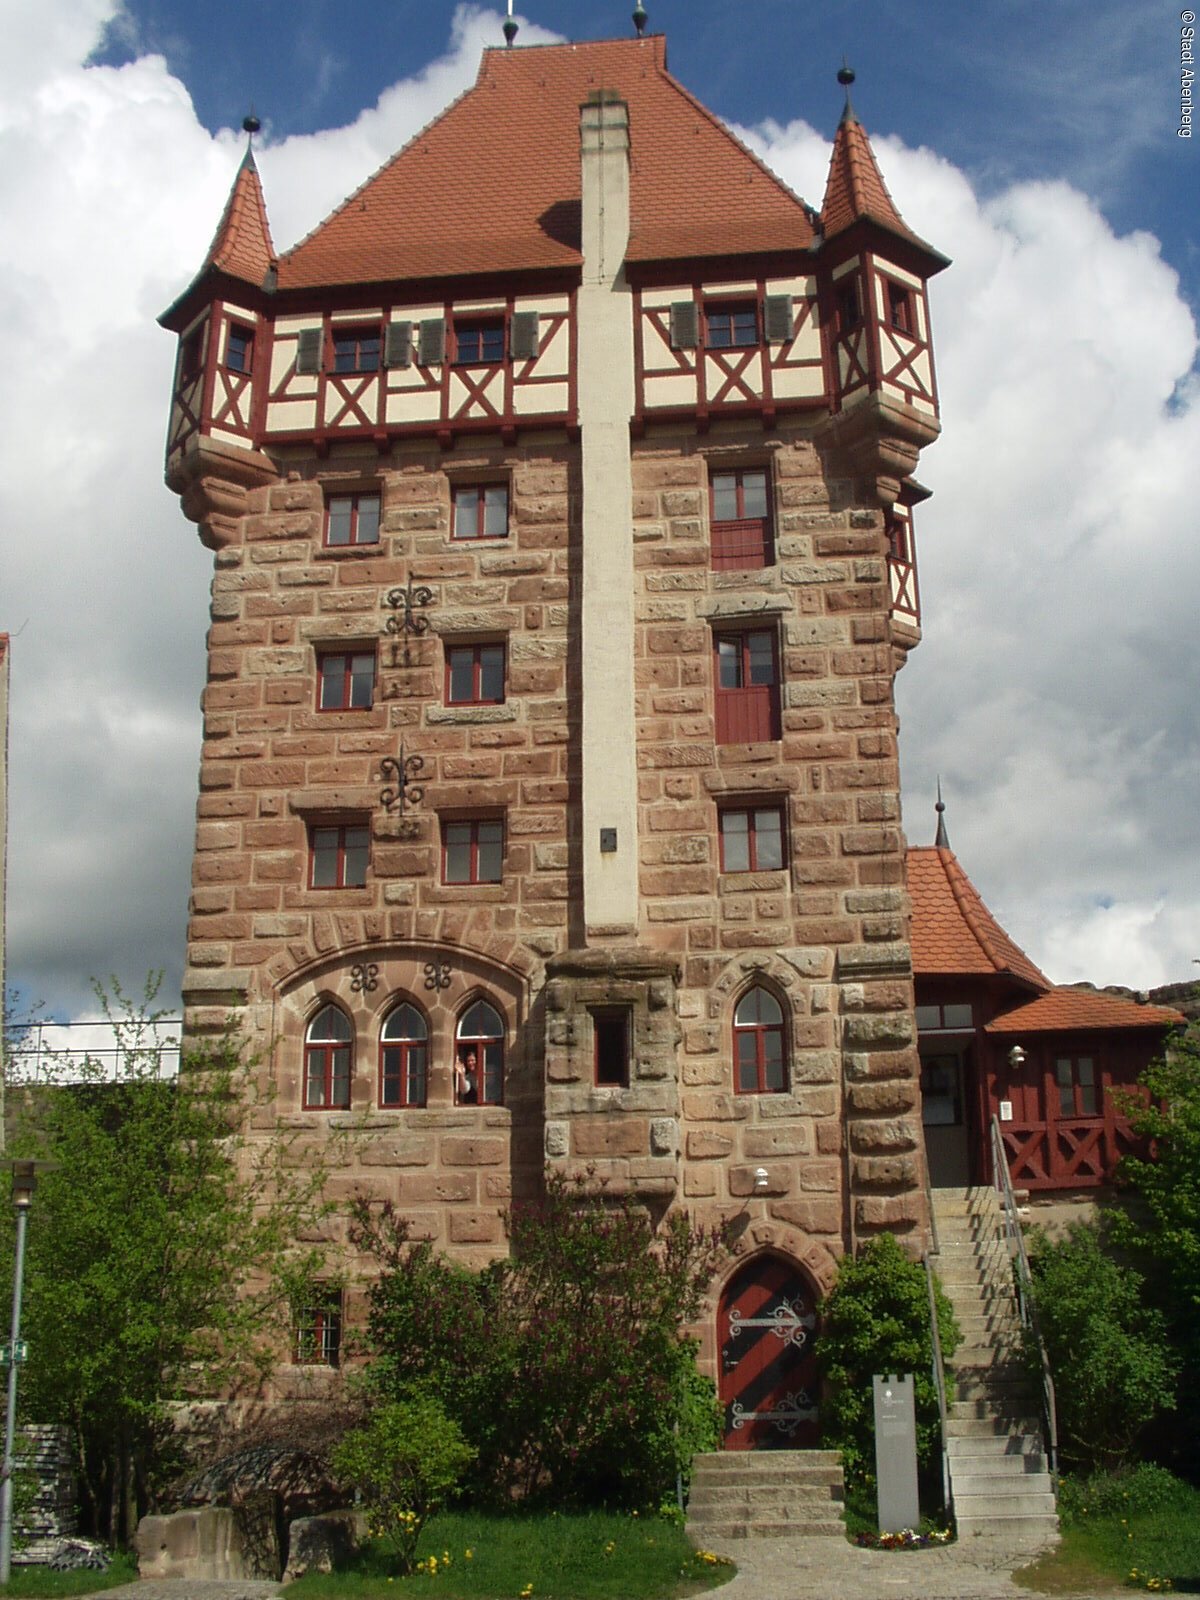 Hotel "Burg Abenberg"